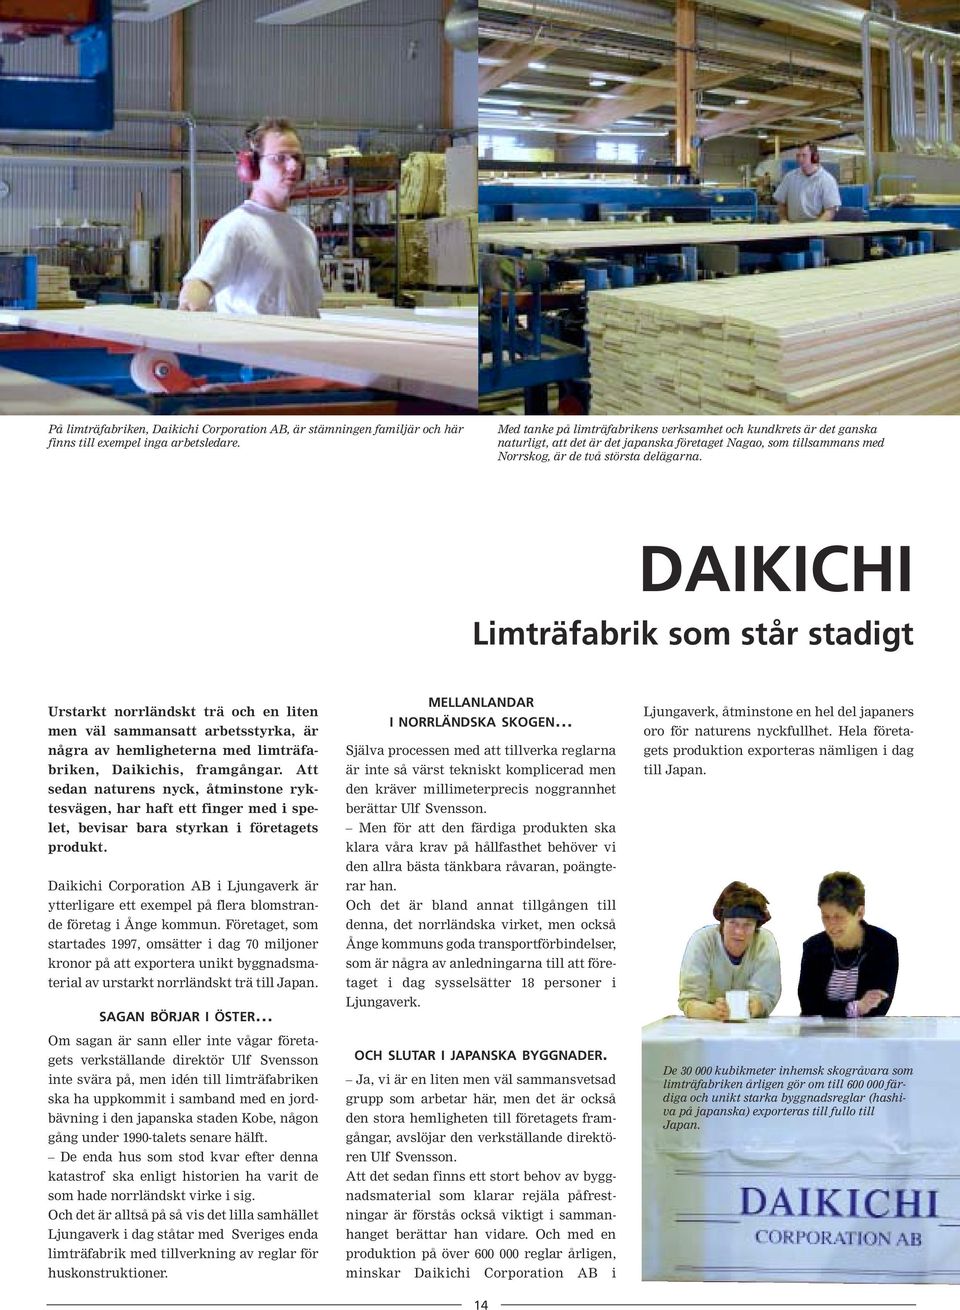 DAIKICHI Limträfabrik som står stadigt Urstarkt norrländskt trä och en liten men väl sammansatt arbetsstyrka, är några av hemligheterna med limträfabriken, Daikichis, framgångar.